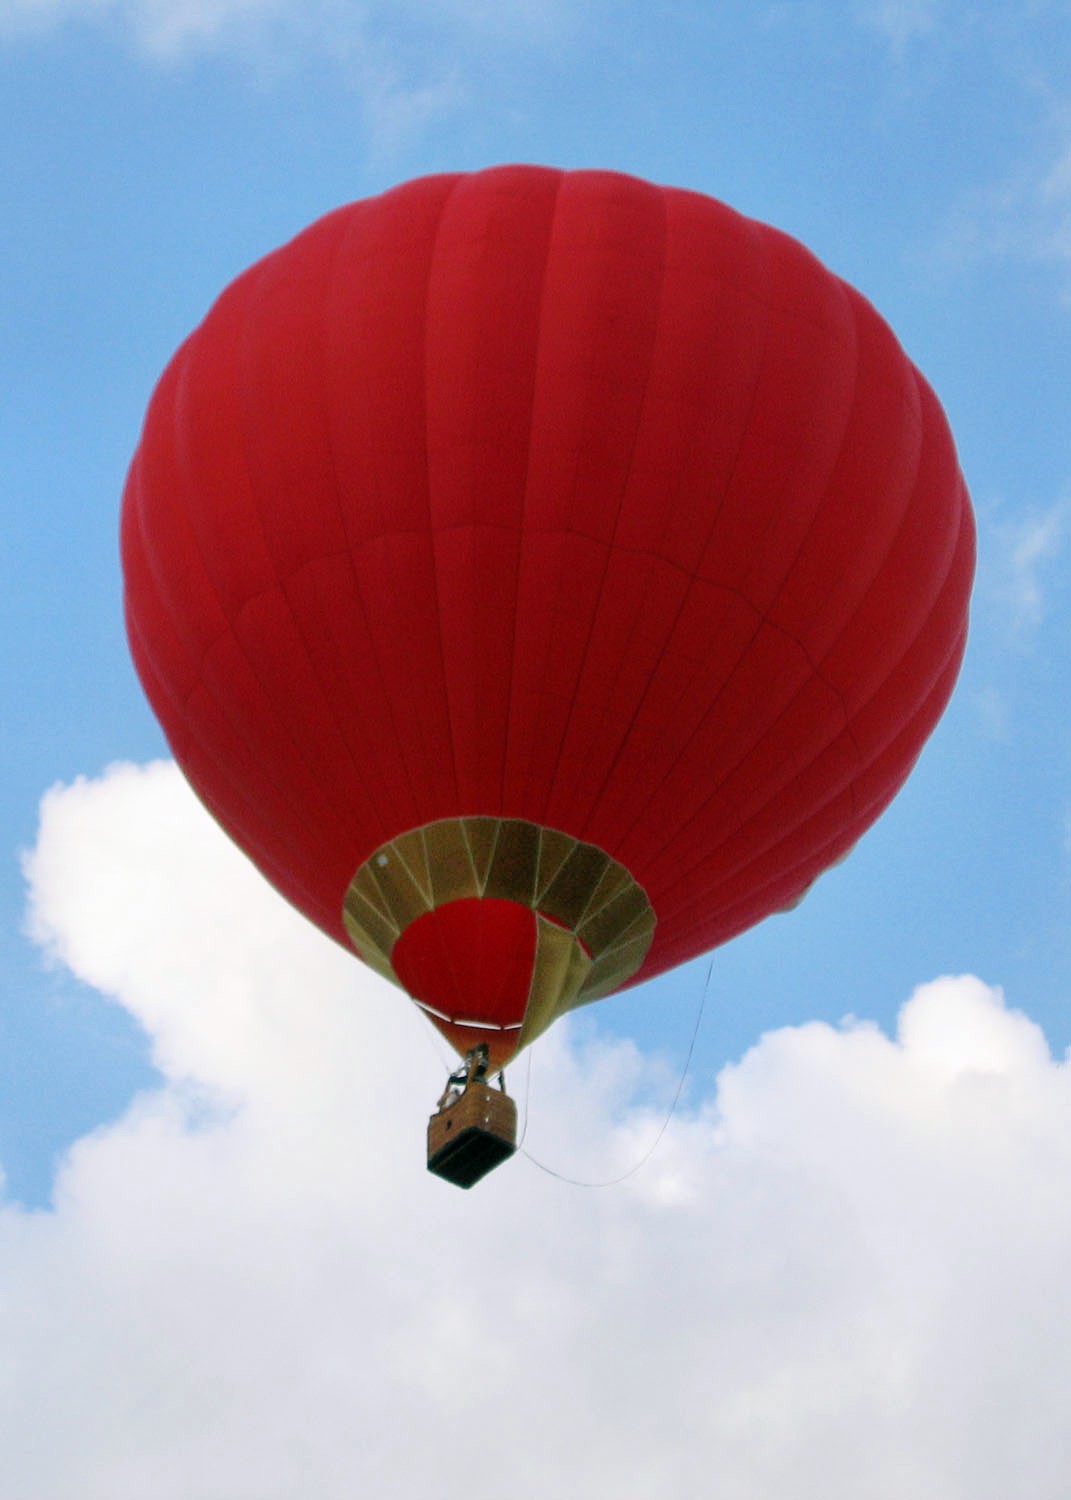 Что будет происходить с воздушным шаром. Воздушный шар. Vozdushnyye shar. Красный воздушный шар с корзиной. Воздушный шар аэростат.